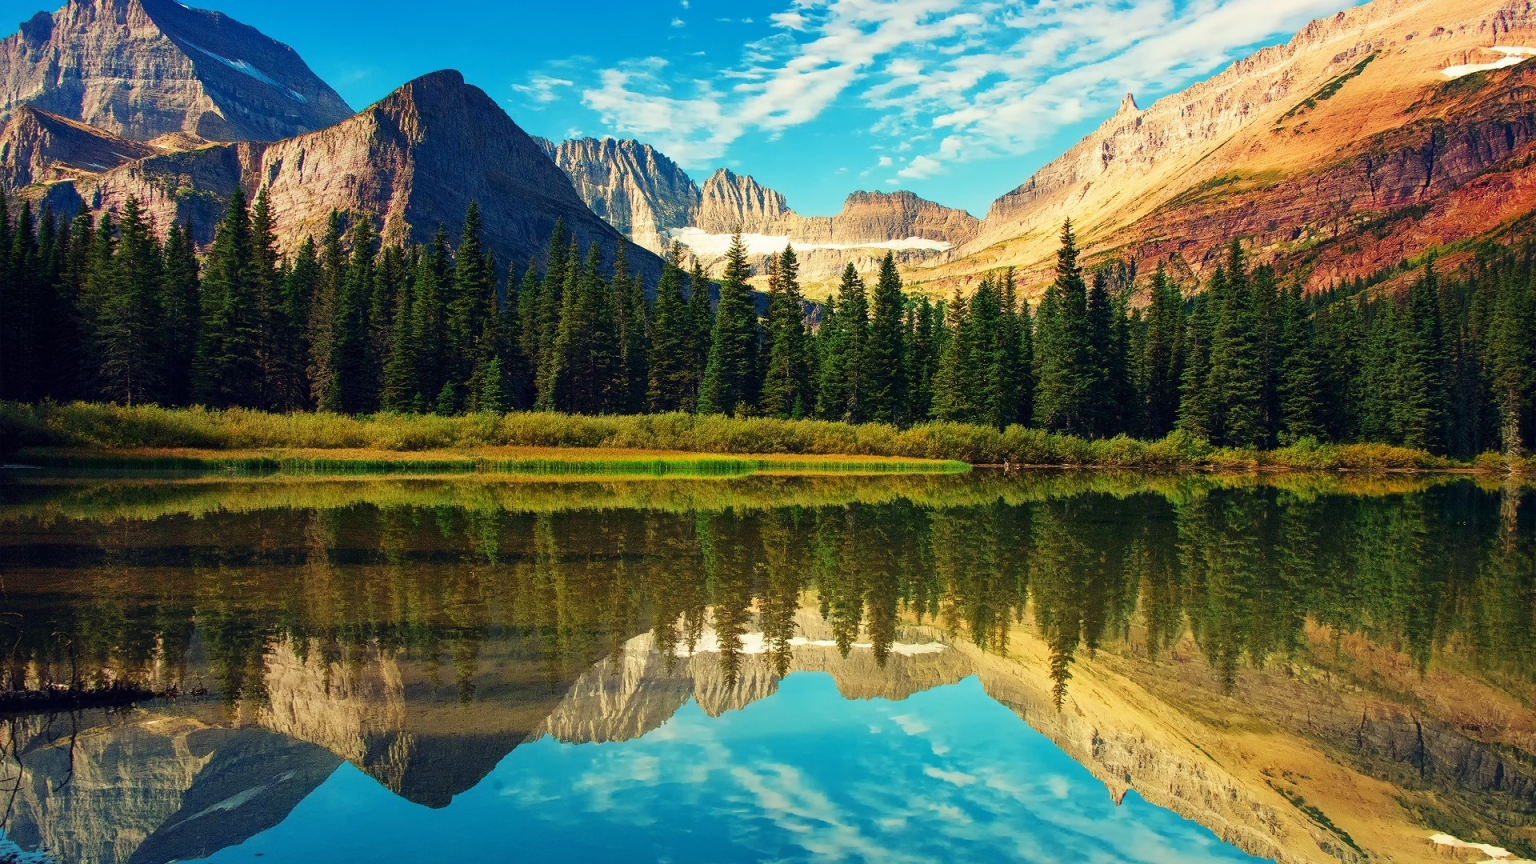 Glacier National Park Landscape for 1536 x 864 HDTV resolution